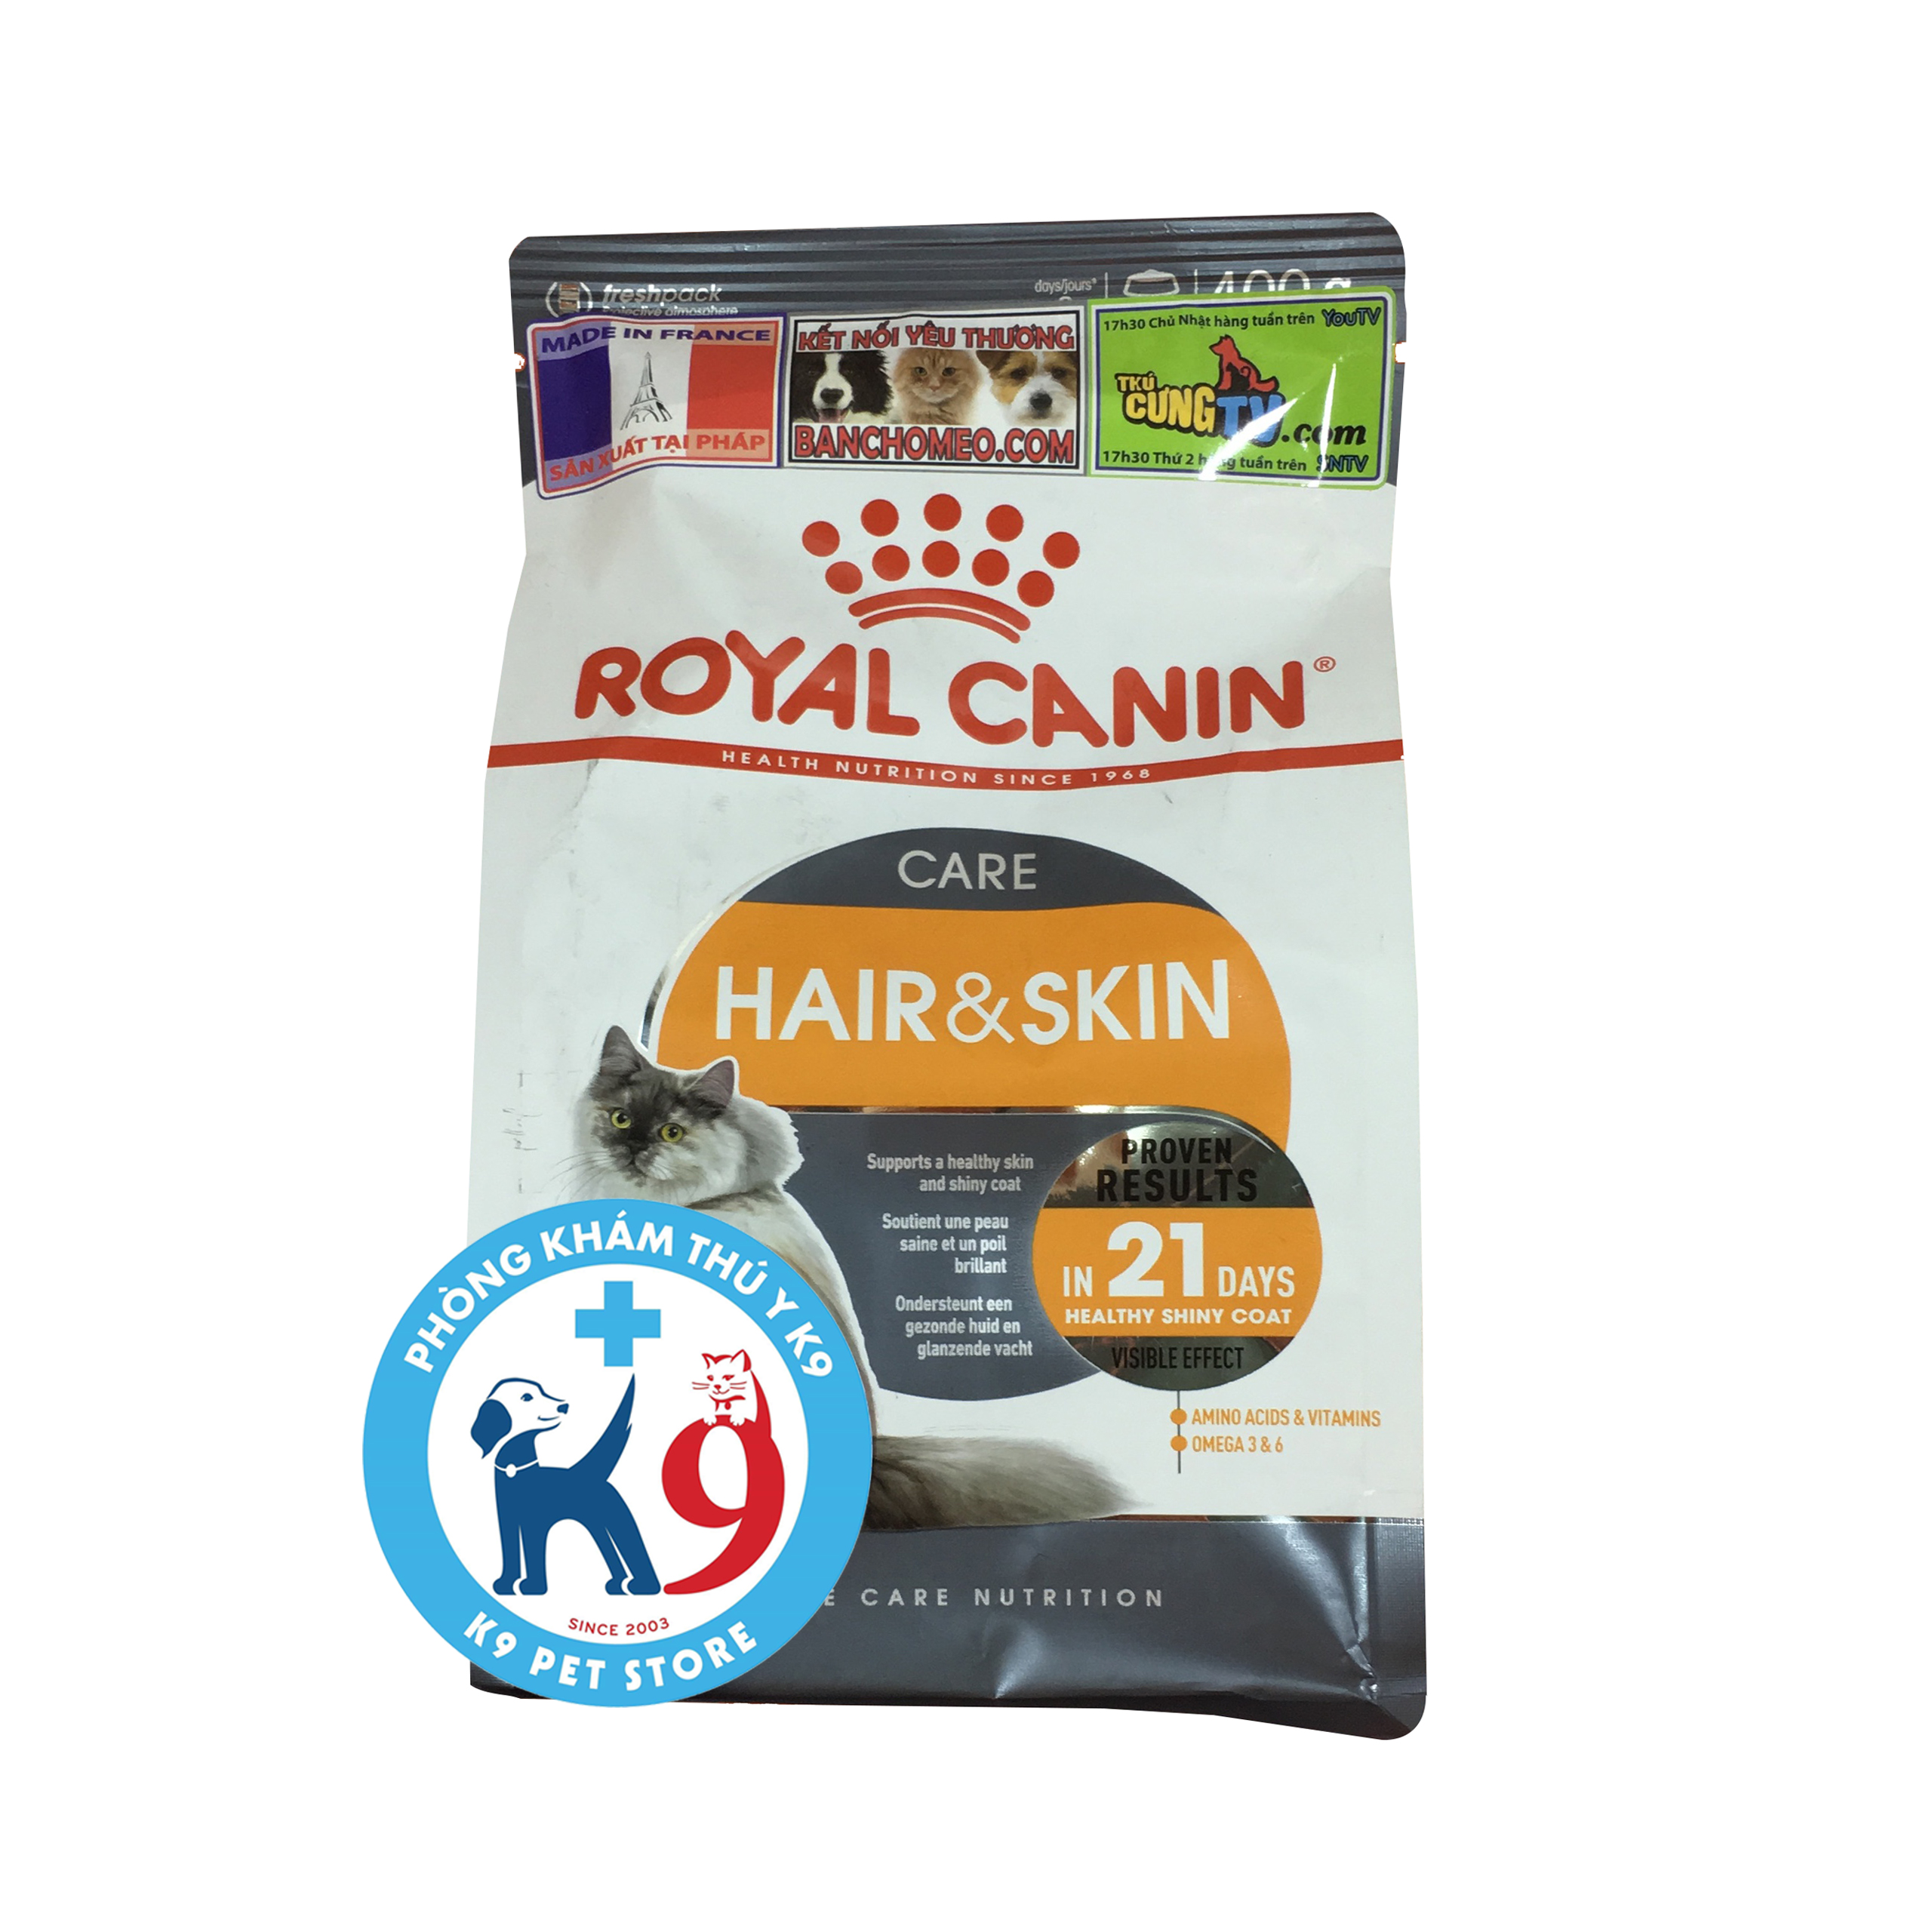 Royal canin hair&skin - Thức ăn cho mèo làm đẹp da và lông 400gr